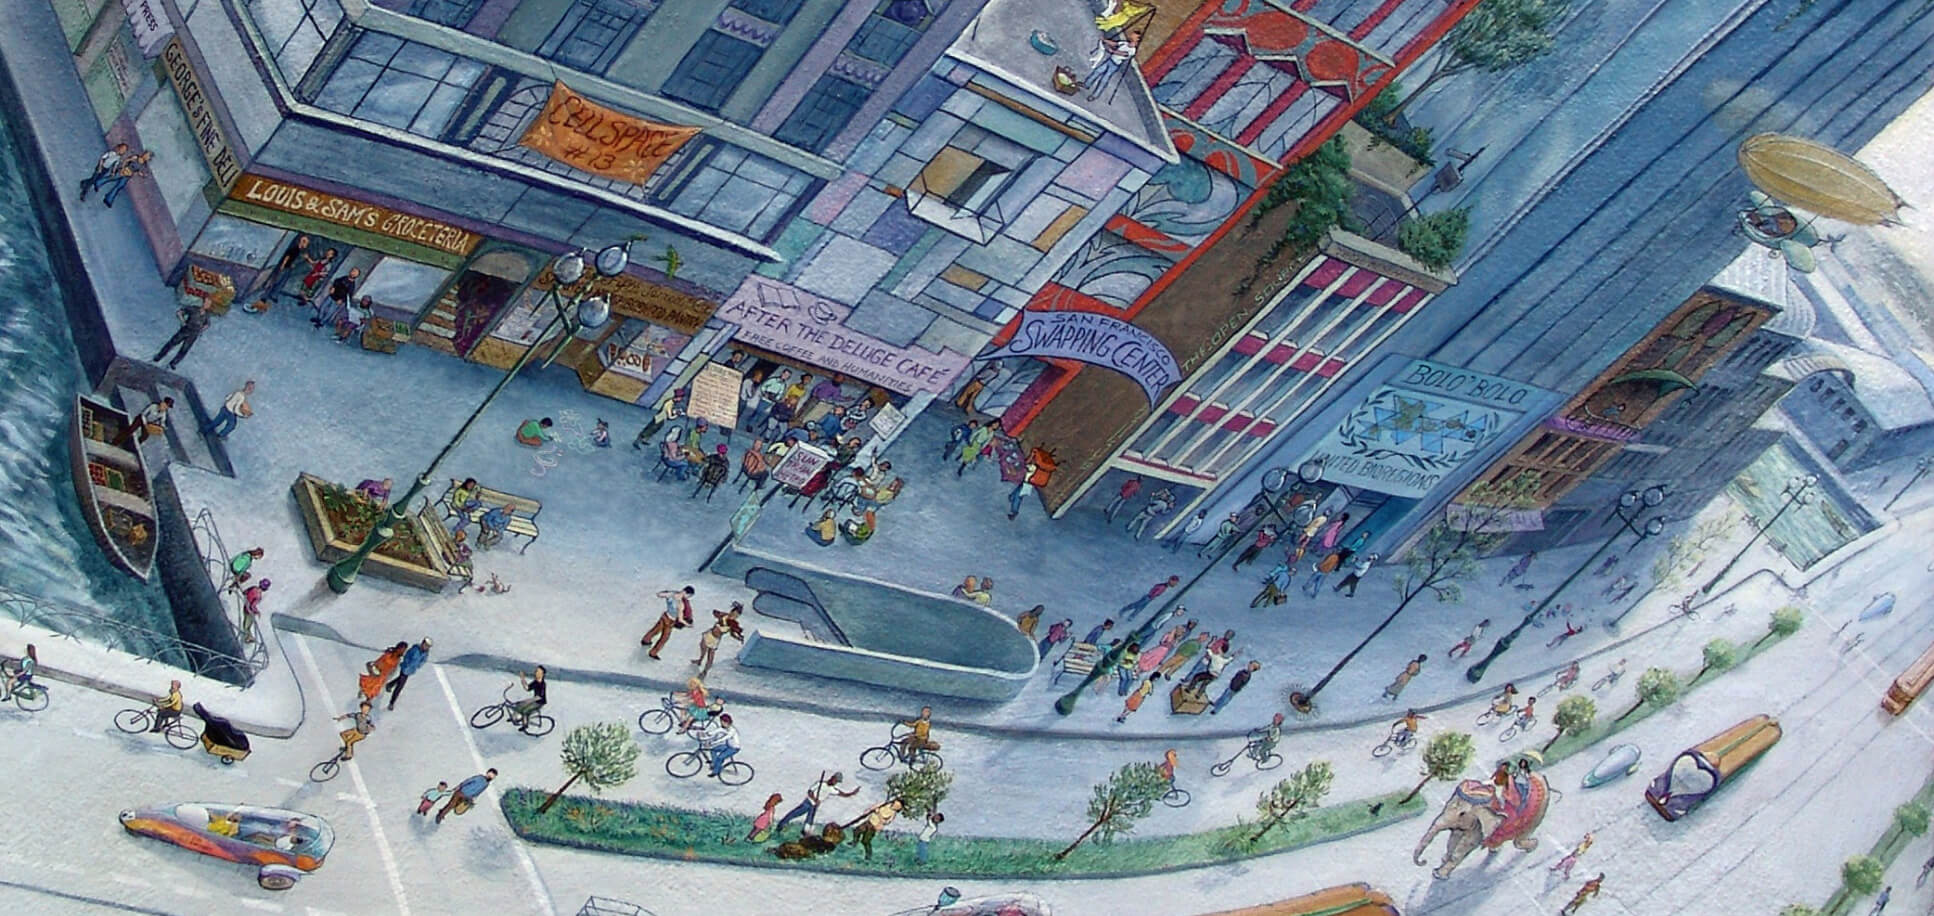 El último panel del mural de Market Street Railway que retrata el futuro